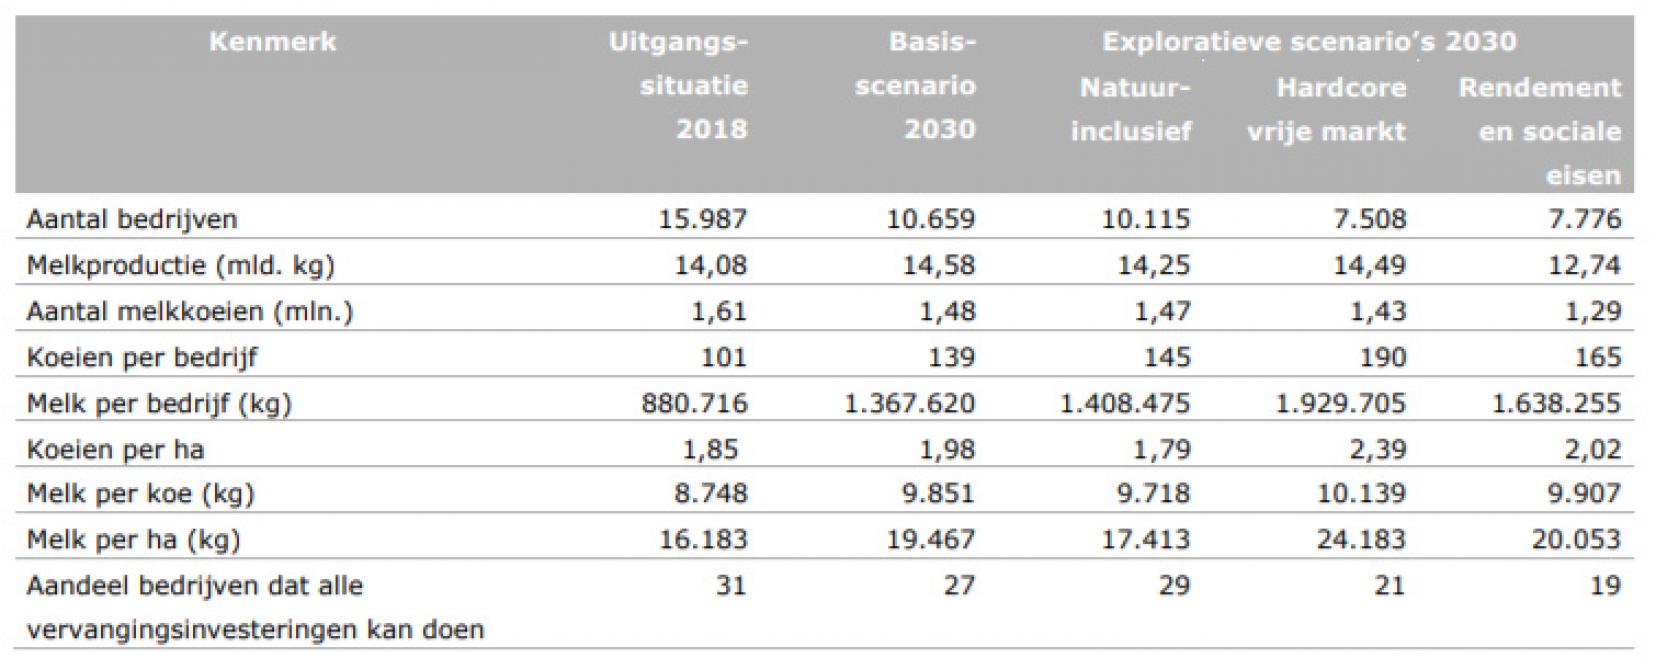 Kenmerken van de melkveehouderijsector en van het gemiddelde melkveebedrijf in 2030 bij de exploratieve scenario’s in relatie tot het basisscenario 2030 en de uitgangssituatie in 2018.